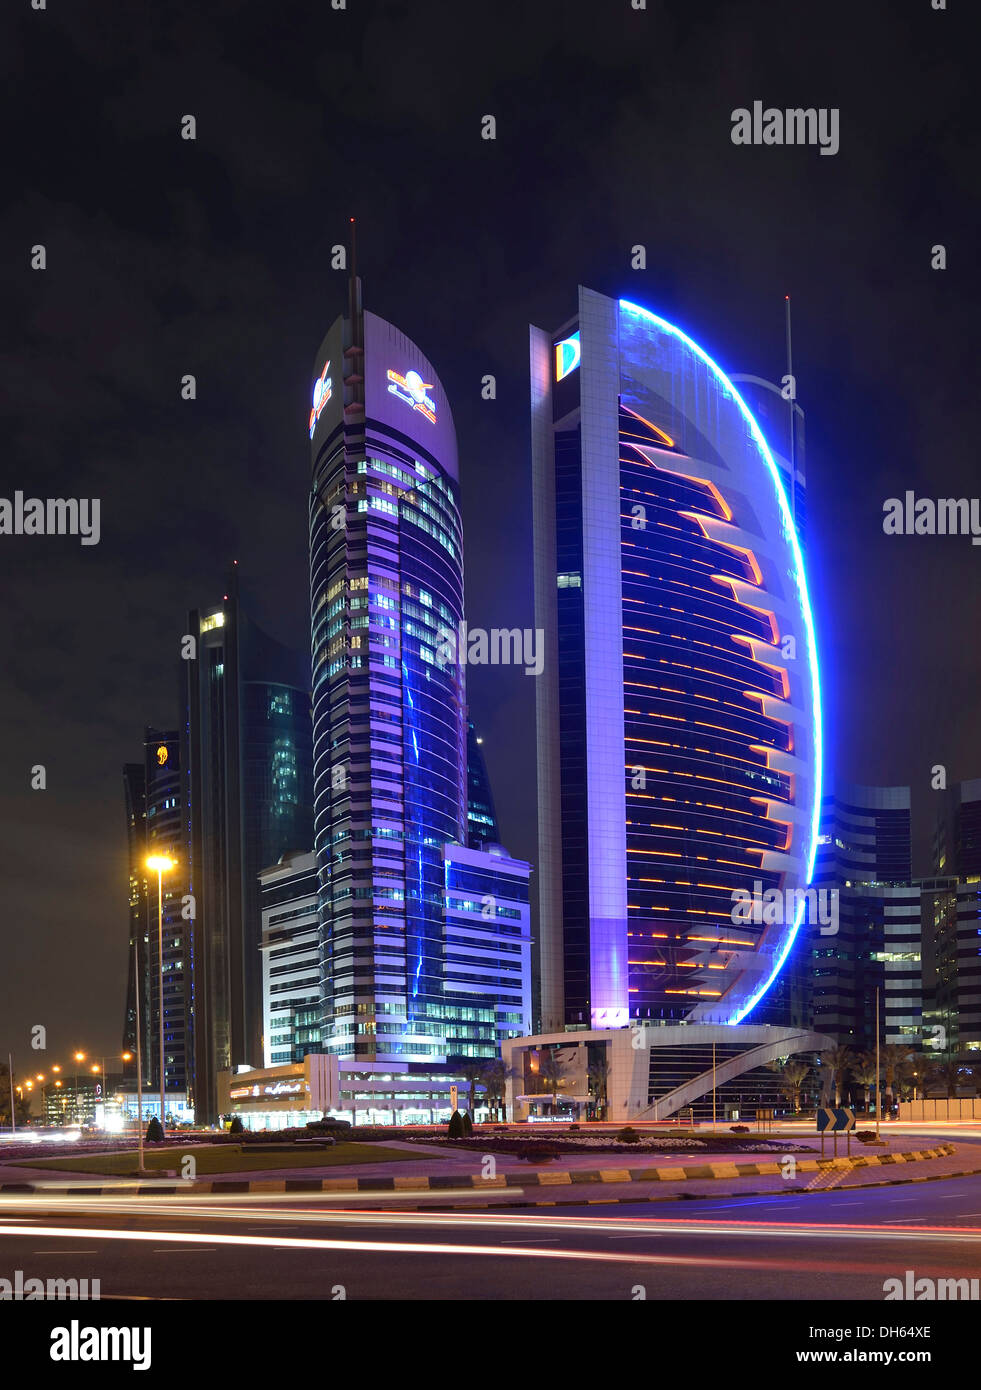 Skyline of Doha at night with the Kahra Maa Tower and the Doha Bank Tower, Doha, Doha, Qatar Stock Photo